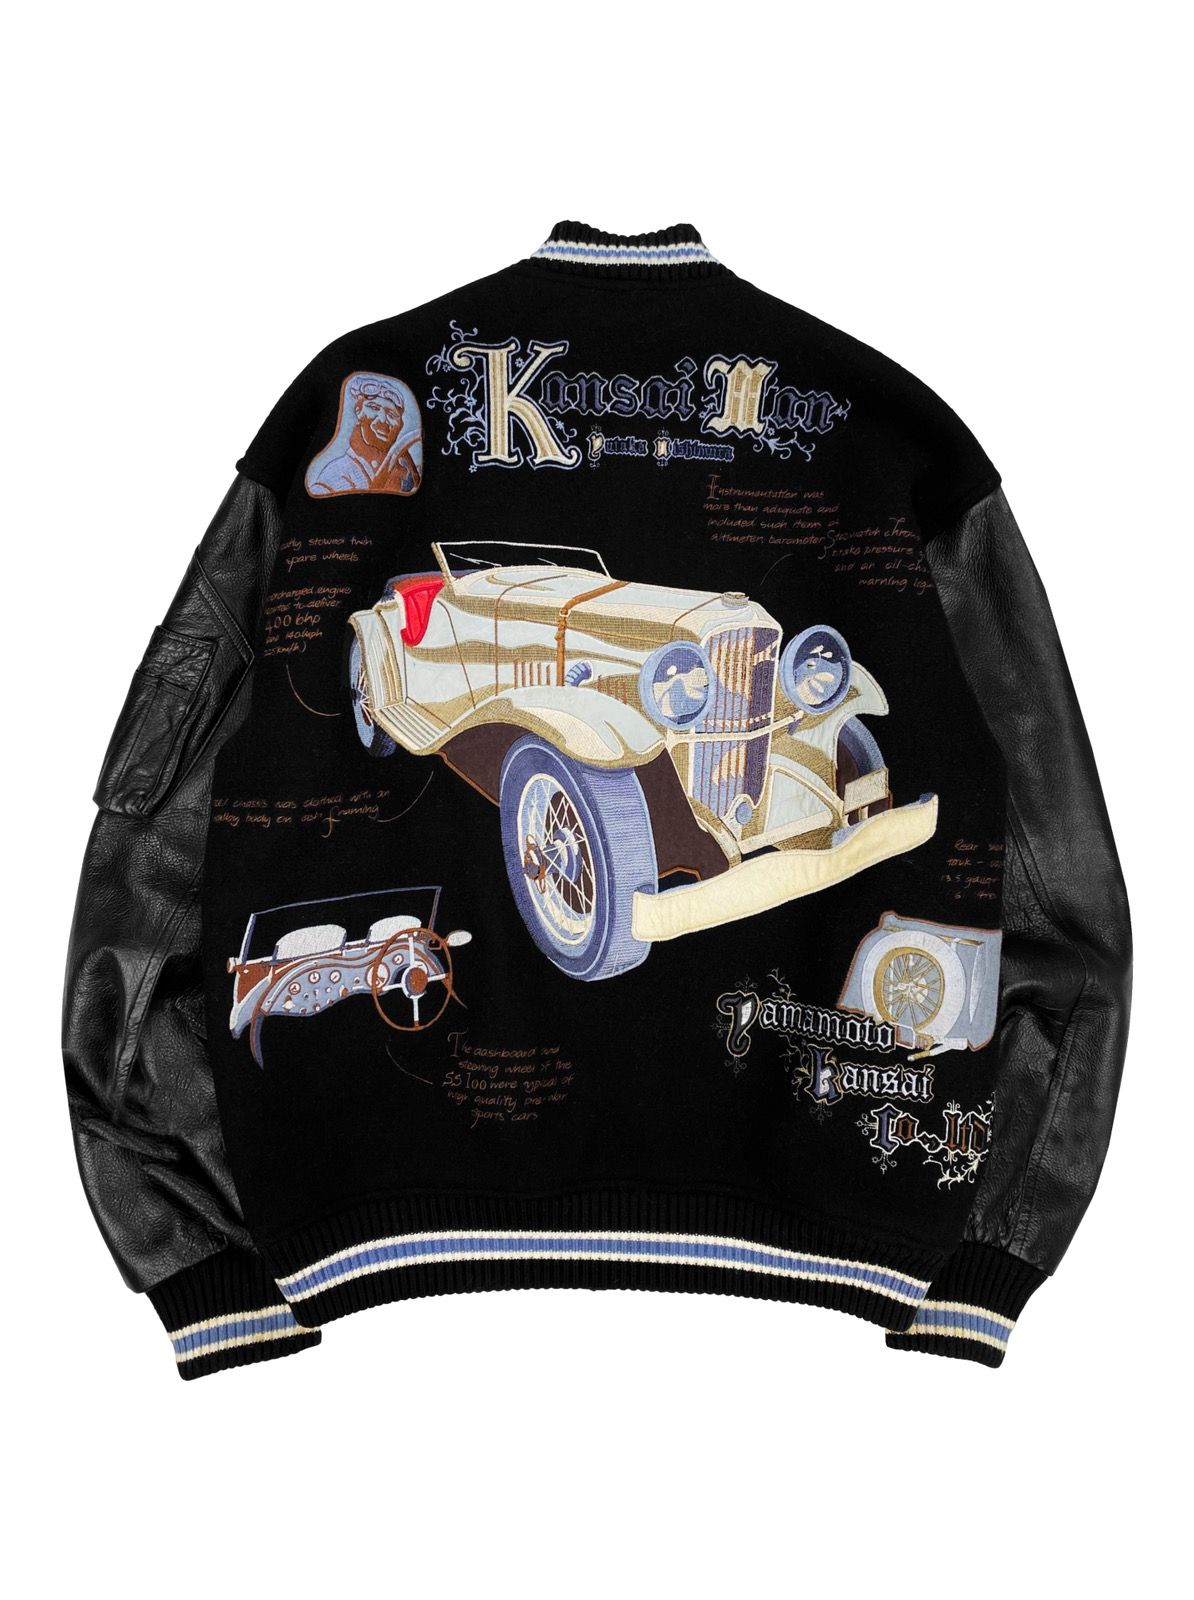 Kansai Yamamoto 90s Kansai Yamamoto SS100 Leather Embroidered Varsity Jacket Size US L / EU 52-54 / 3 - 1 Preview